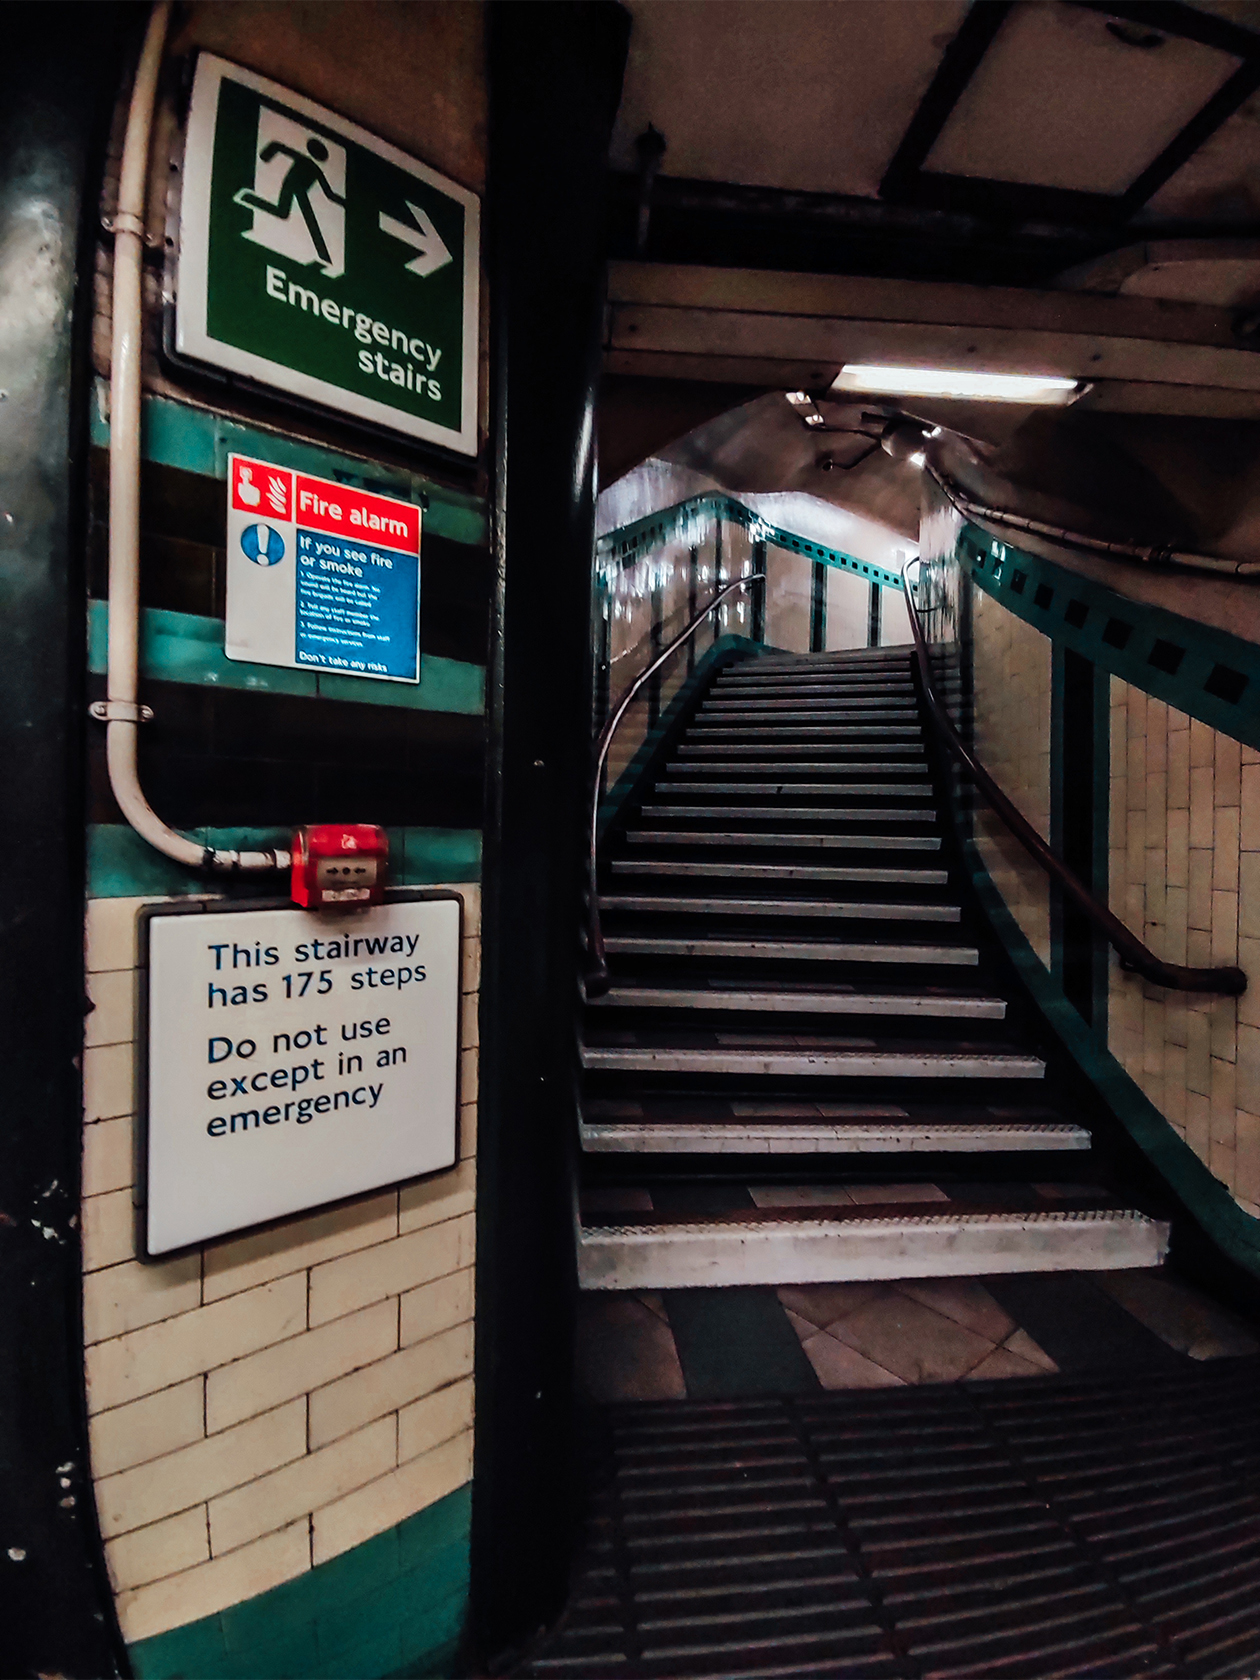 Надпись на станции «Рассел-сквер» предупреждает, что пользоваться лестницей из 175 ступеней надо только в случае экстренной необходимости, а вообще лучше использовать лифт